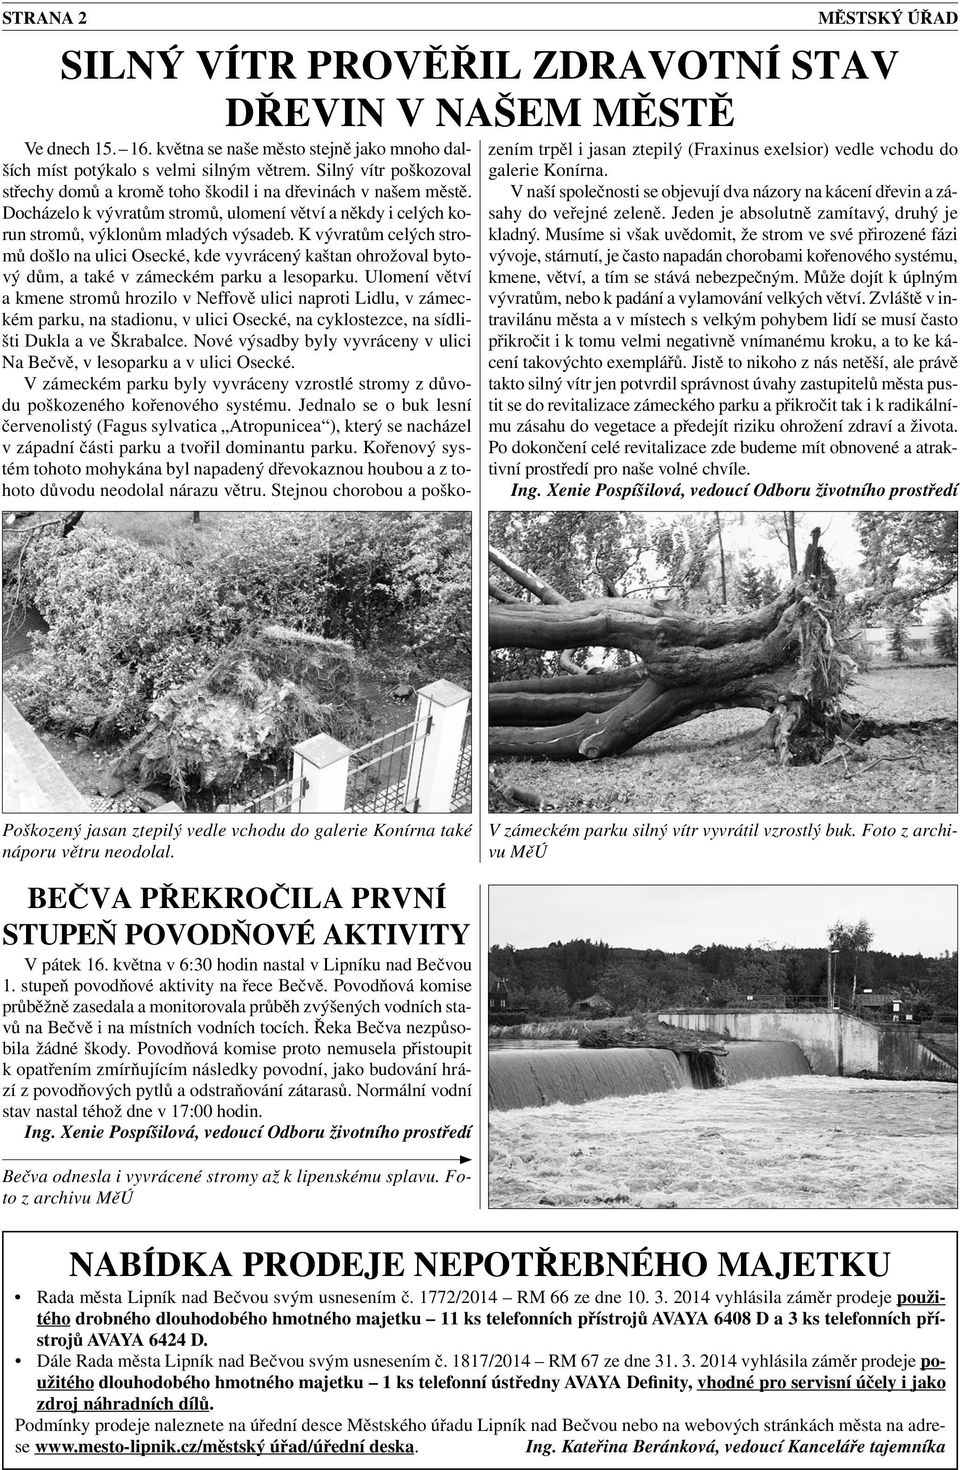 K vývratům celých stromů došlo na ulici Osecké, kde vyvrácený kaštan ohrožoval bytový dům, a také v zámeckém parku a lesoparku.